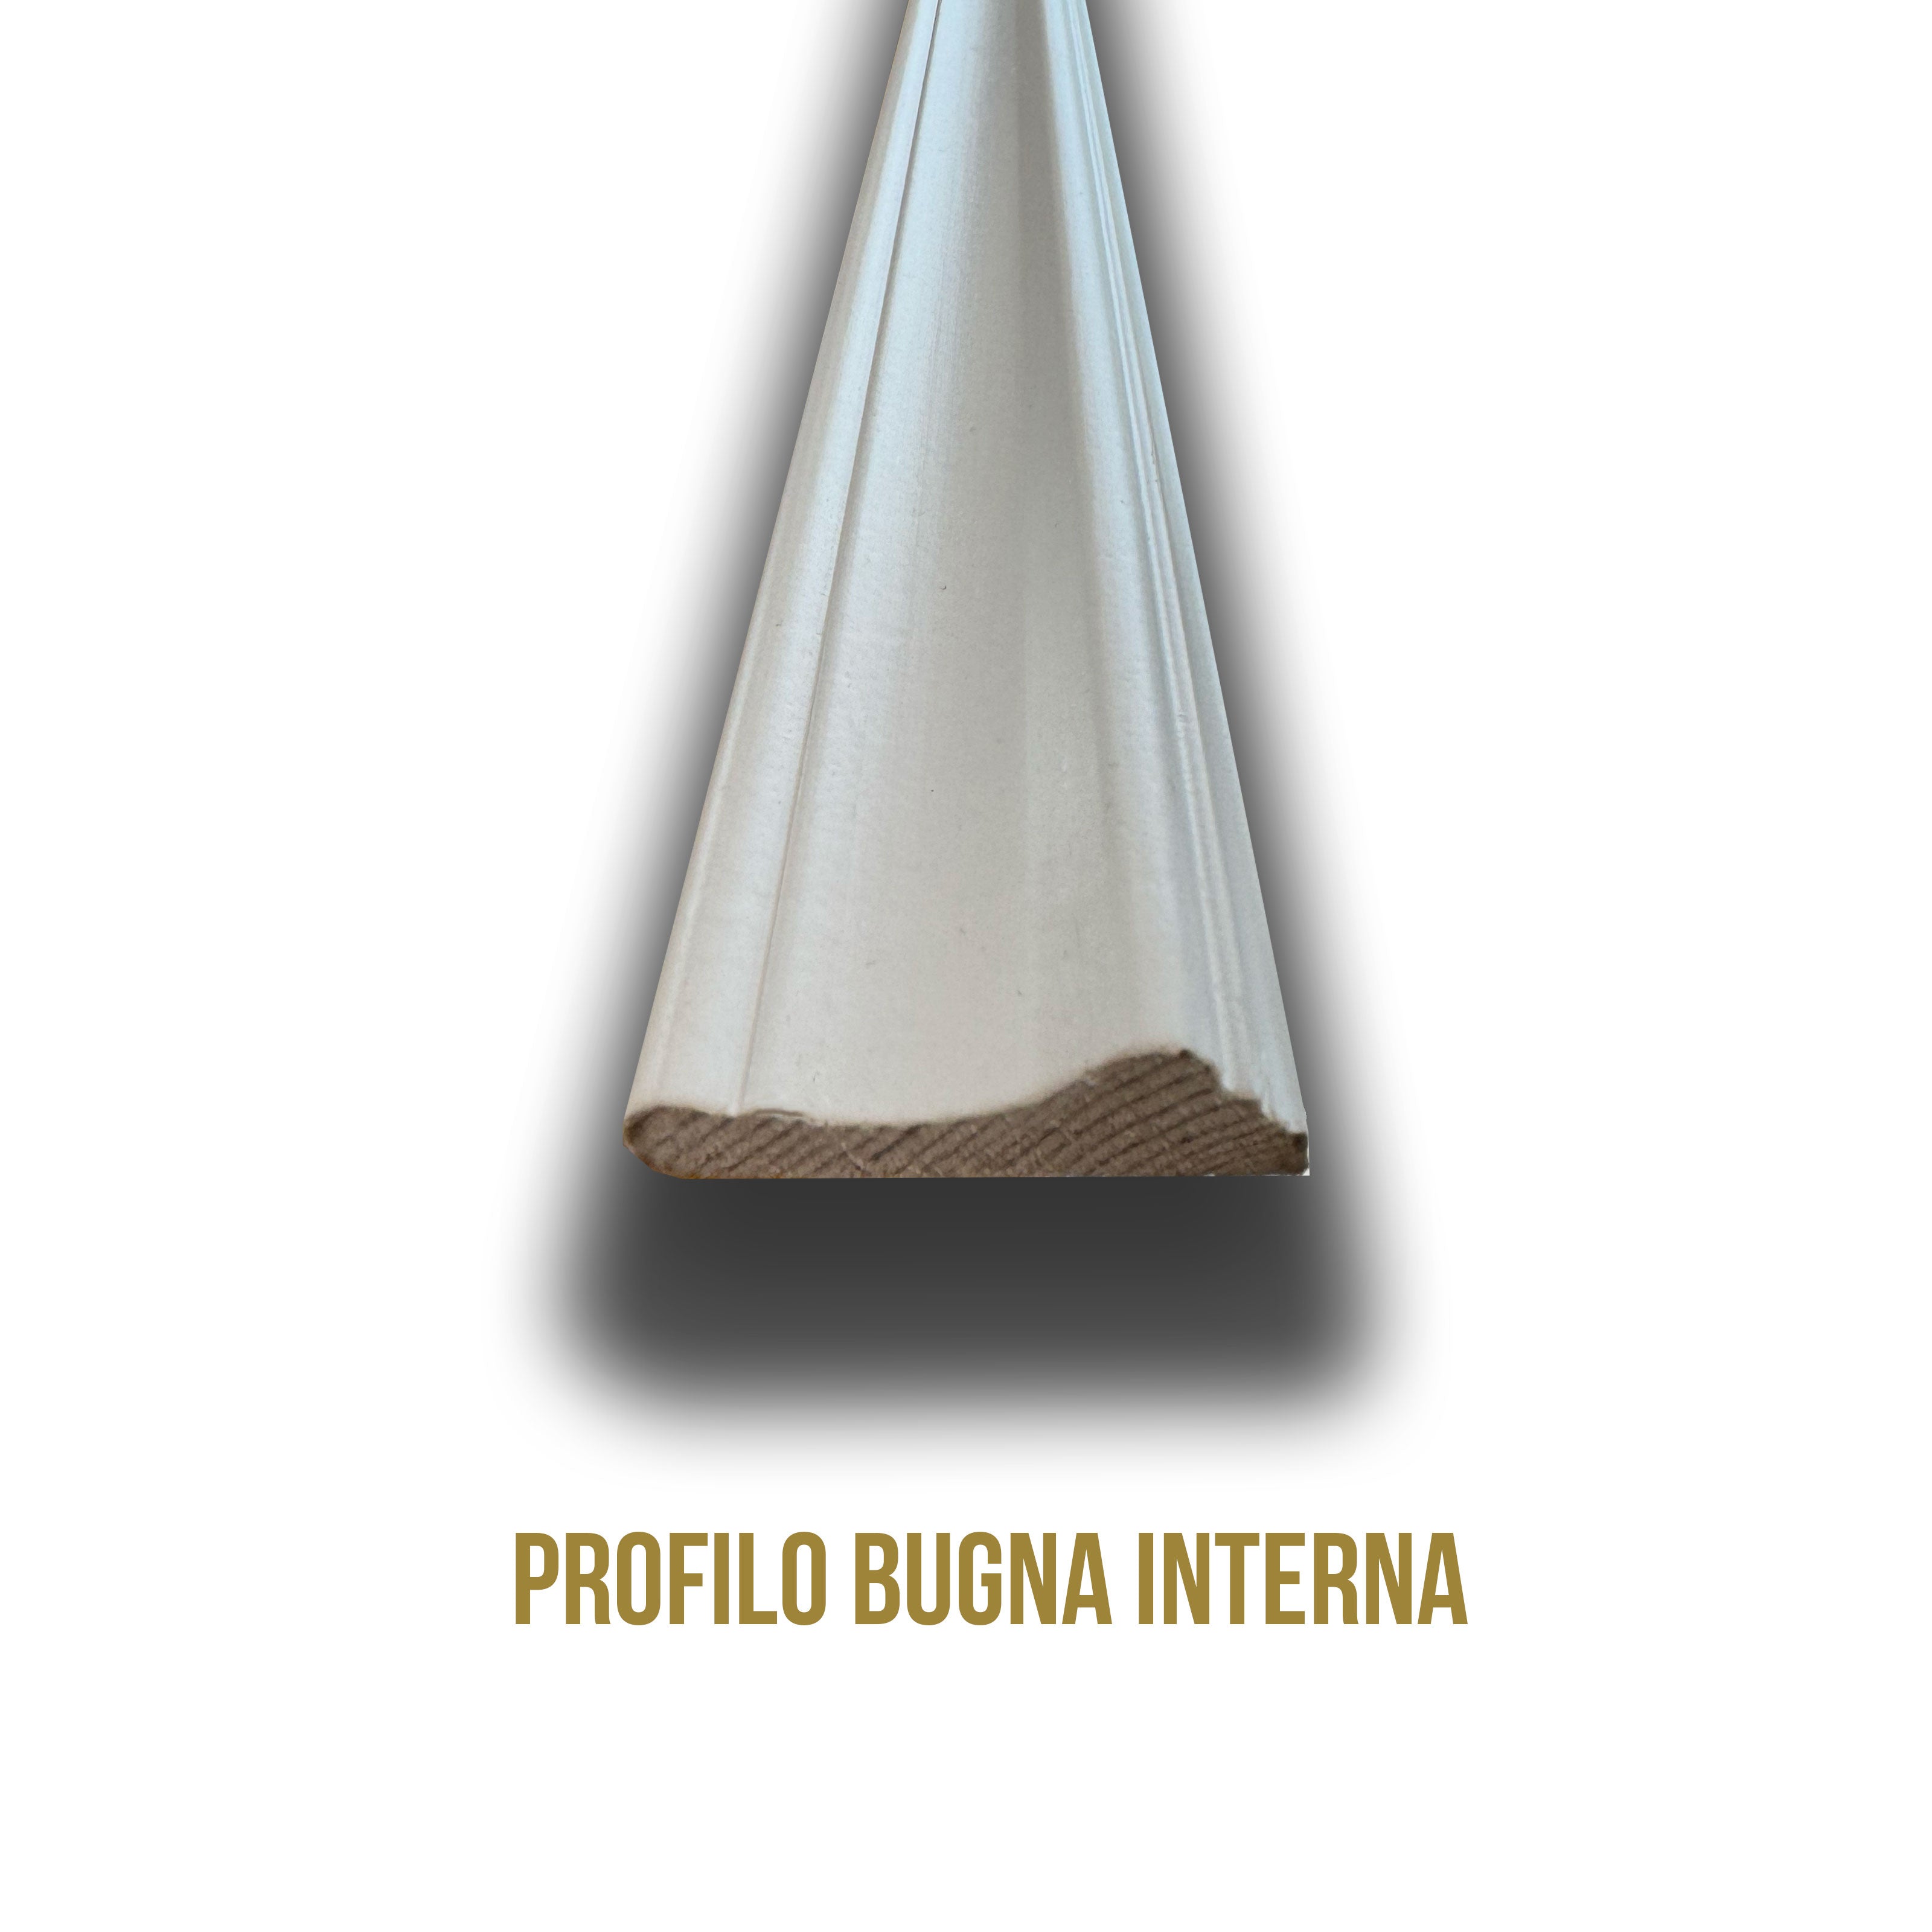 1 bugna completa per Boiserie in legno MASSICCIO laccata con pannello in Faesite lacc. 60x60cm + bugna interna - Eternal Parquet